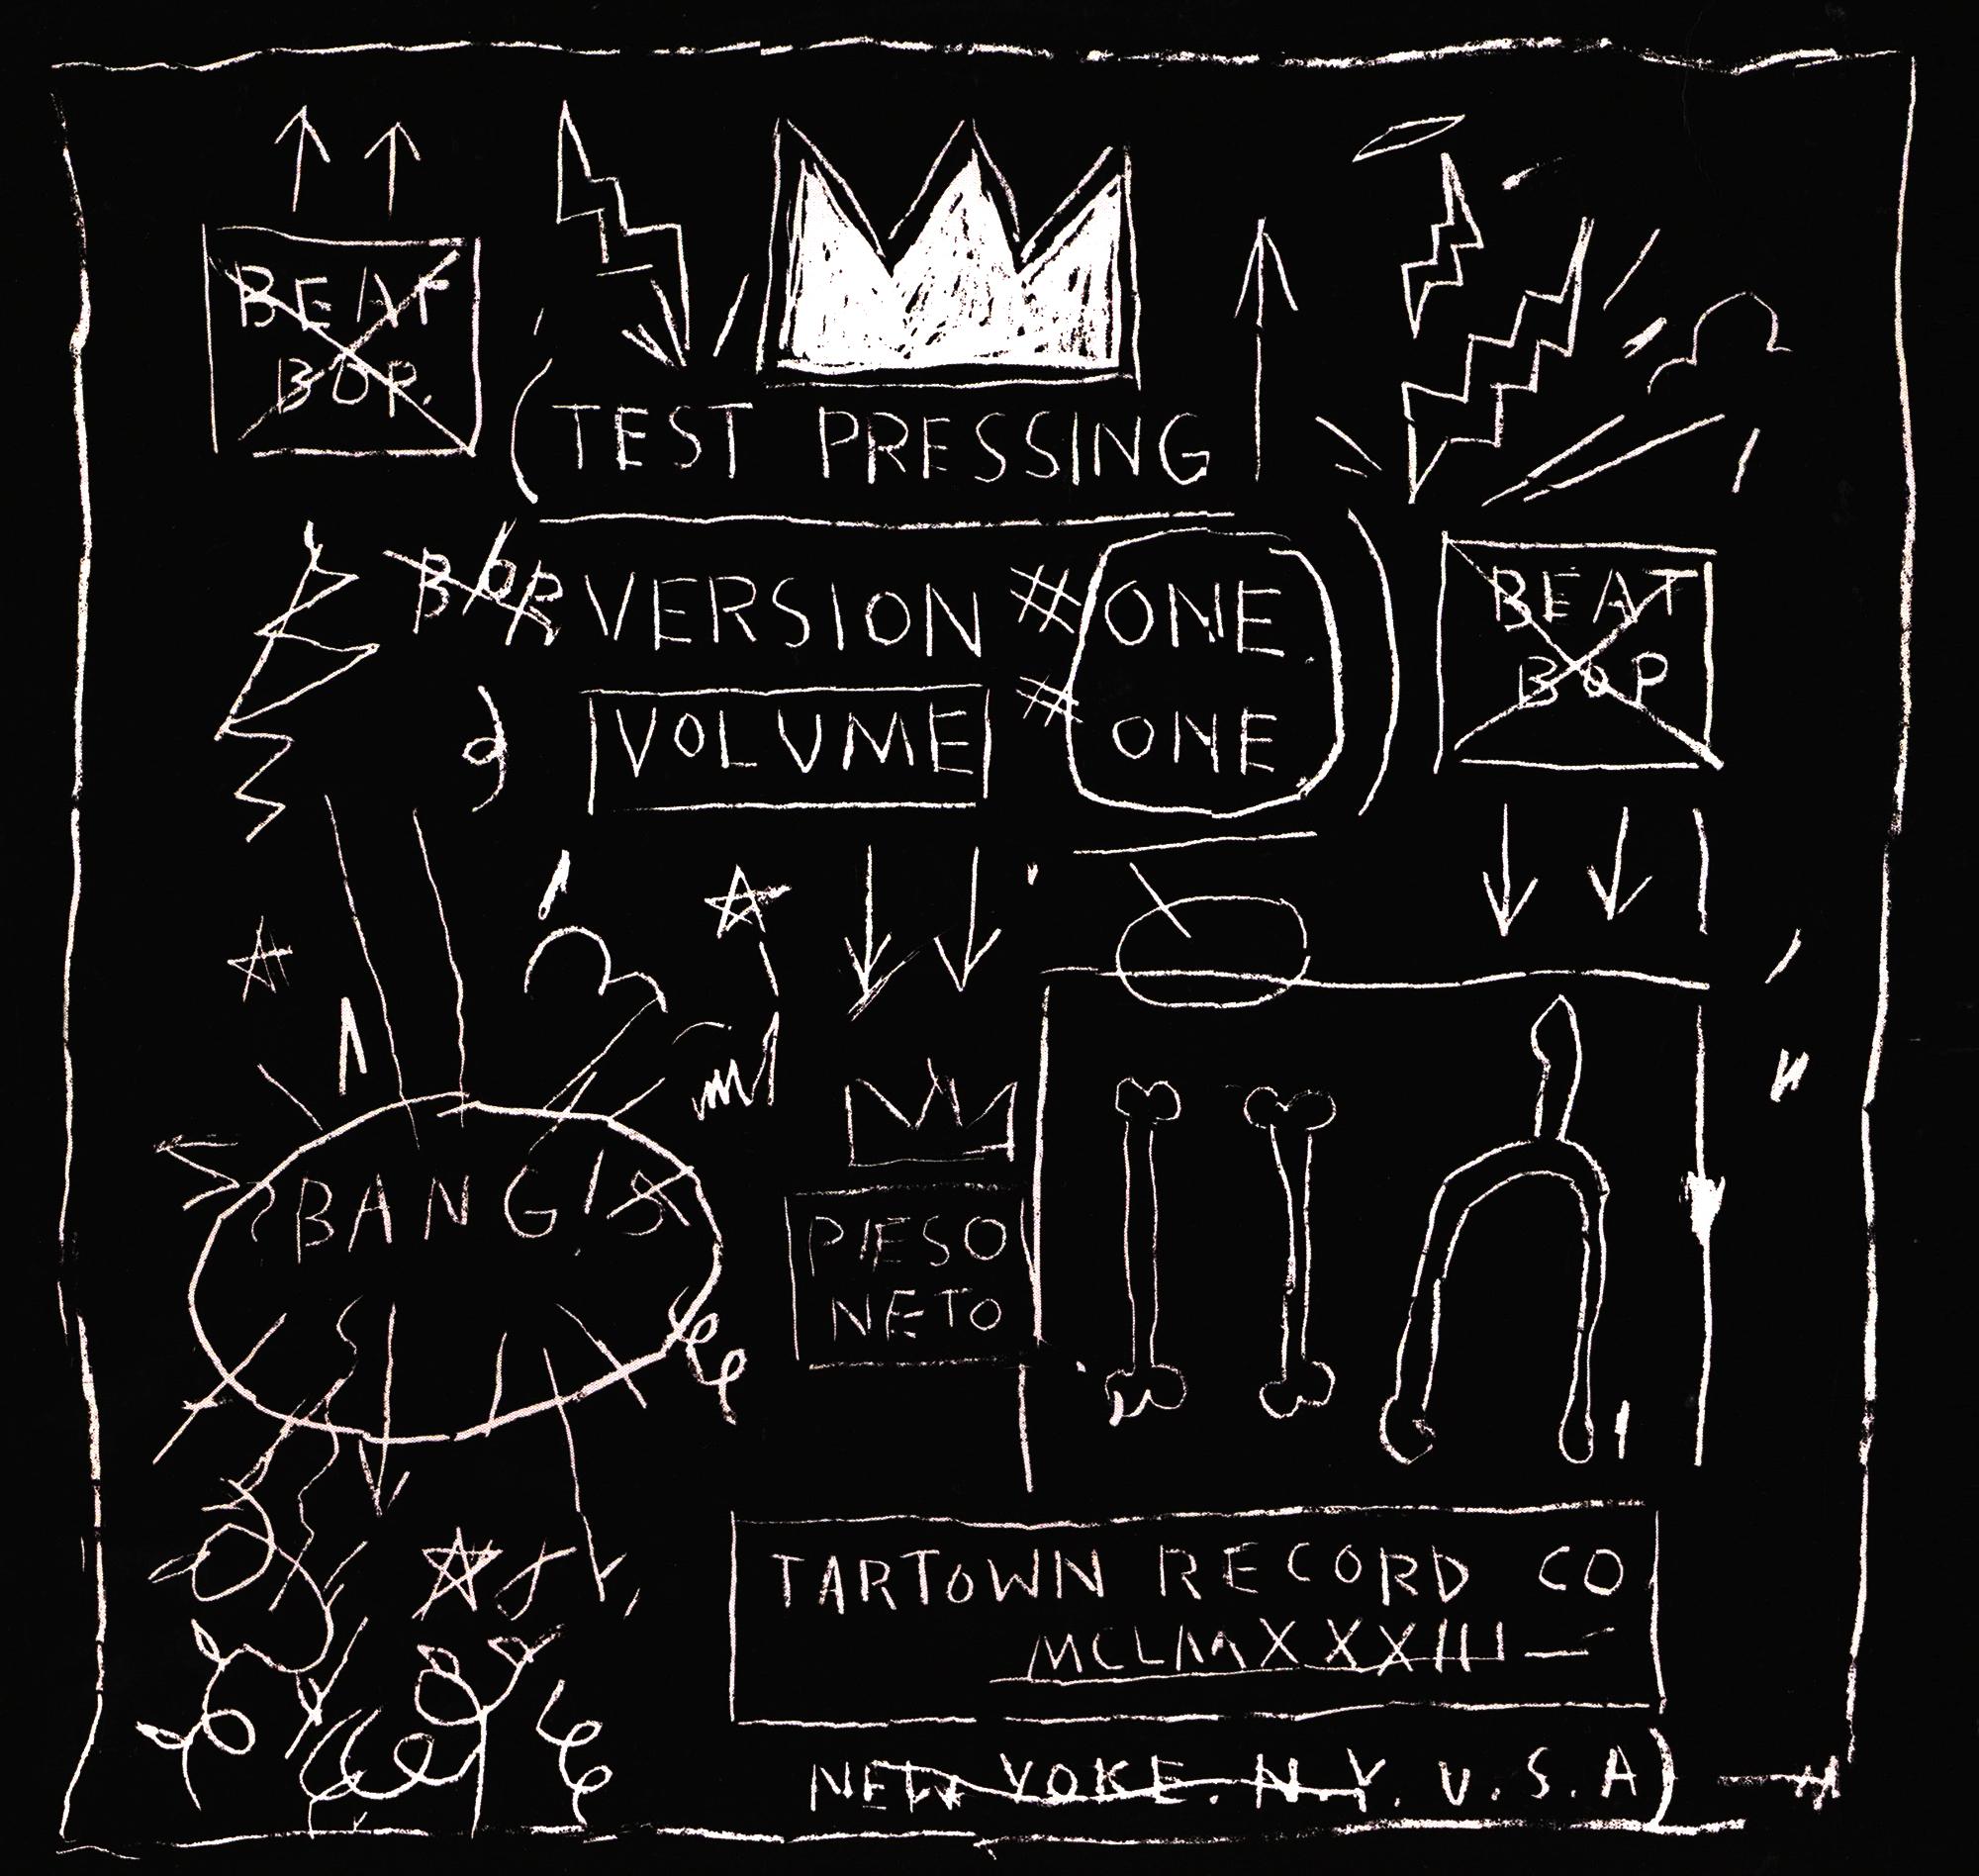 Basquiat Keith Haring Andy Warhol Record Art (lot de 4) - Pop Art Mixed Media Art par after Jean-Michel Basquiat